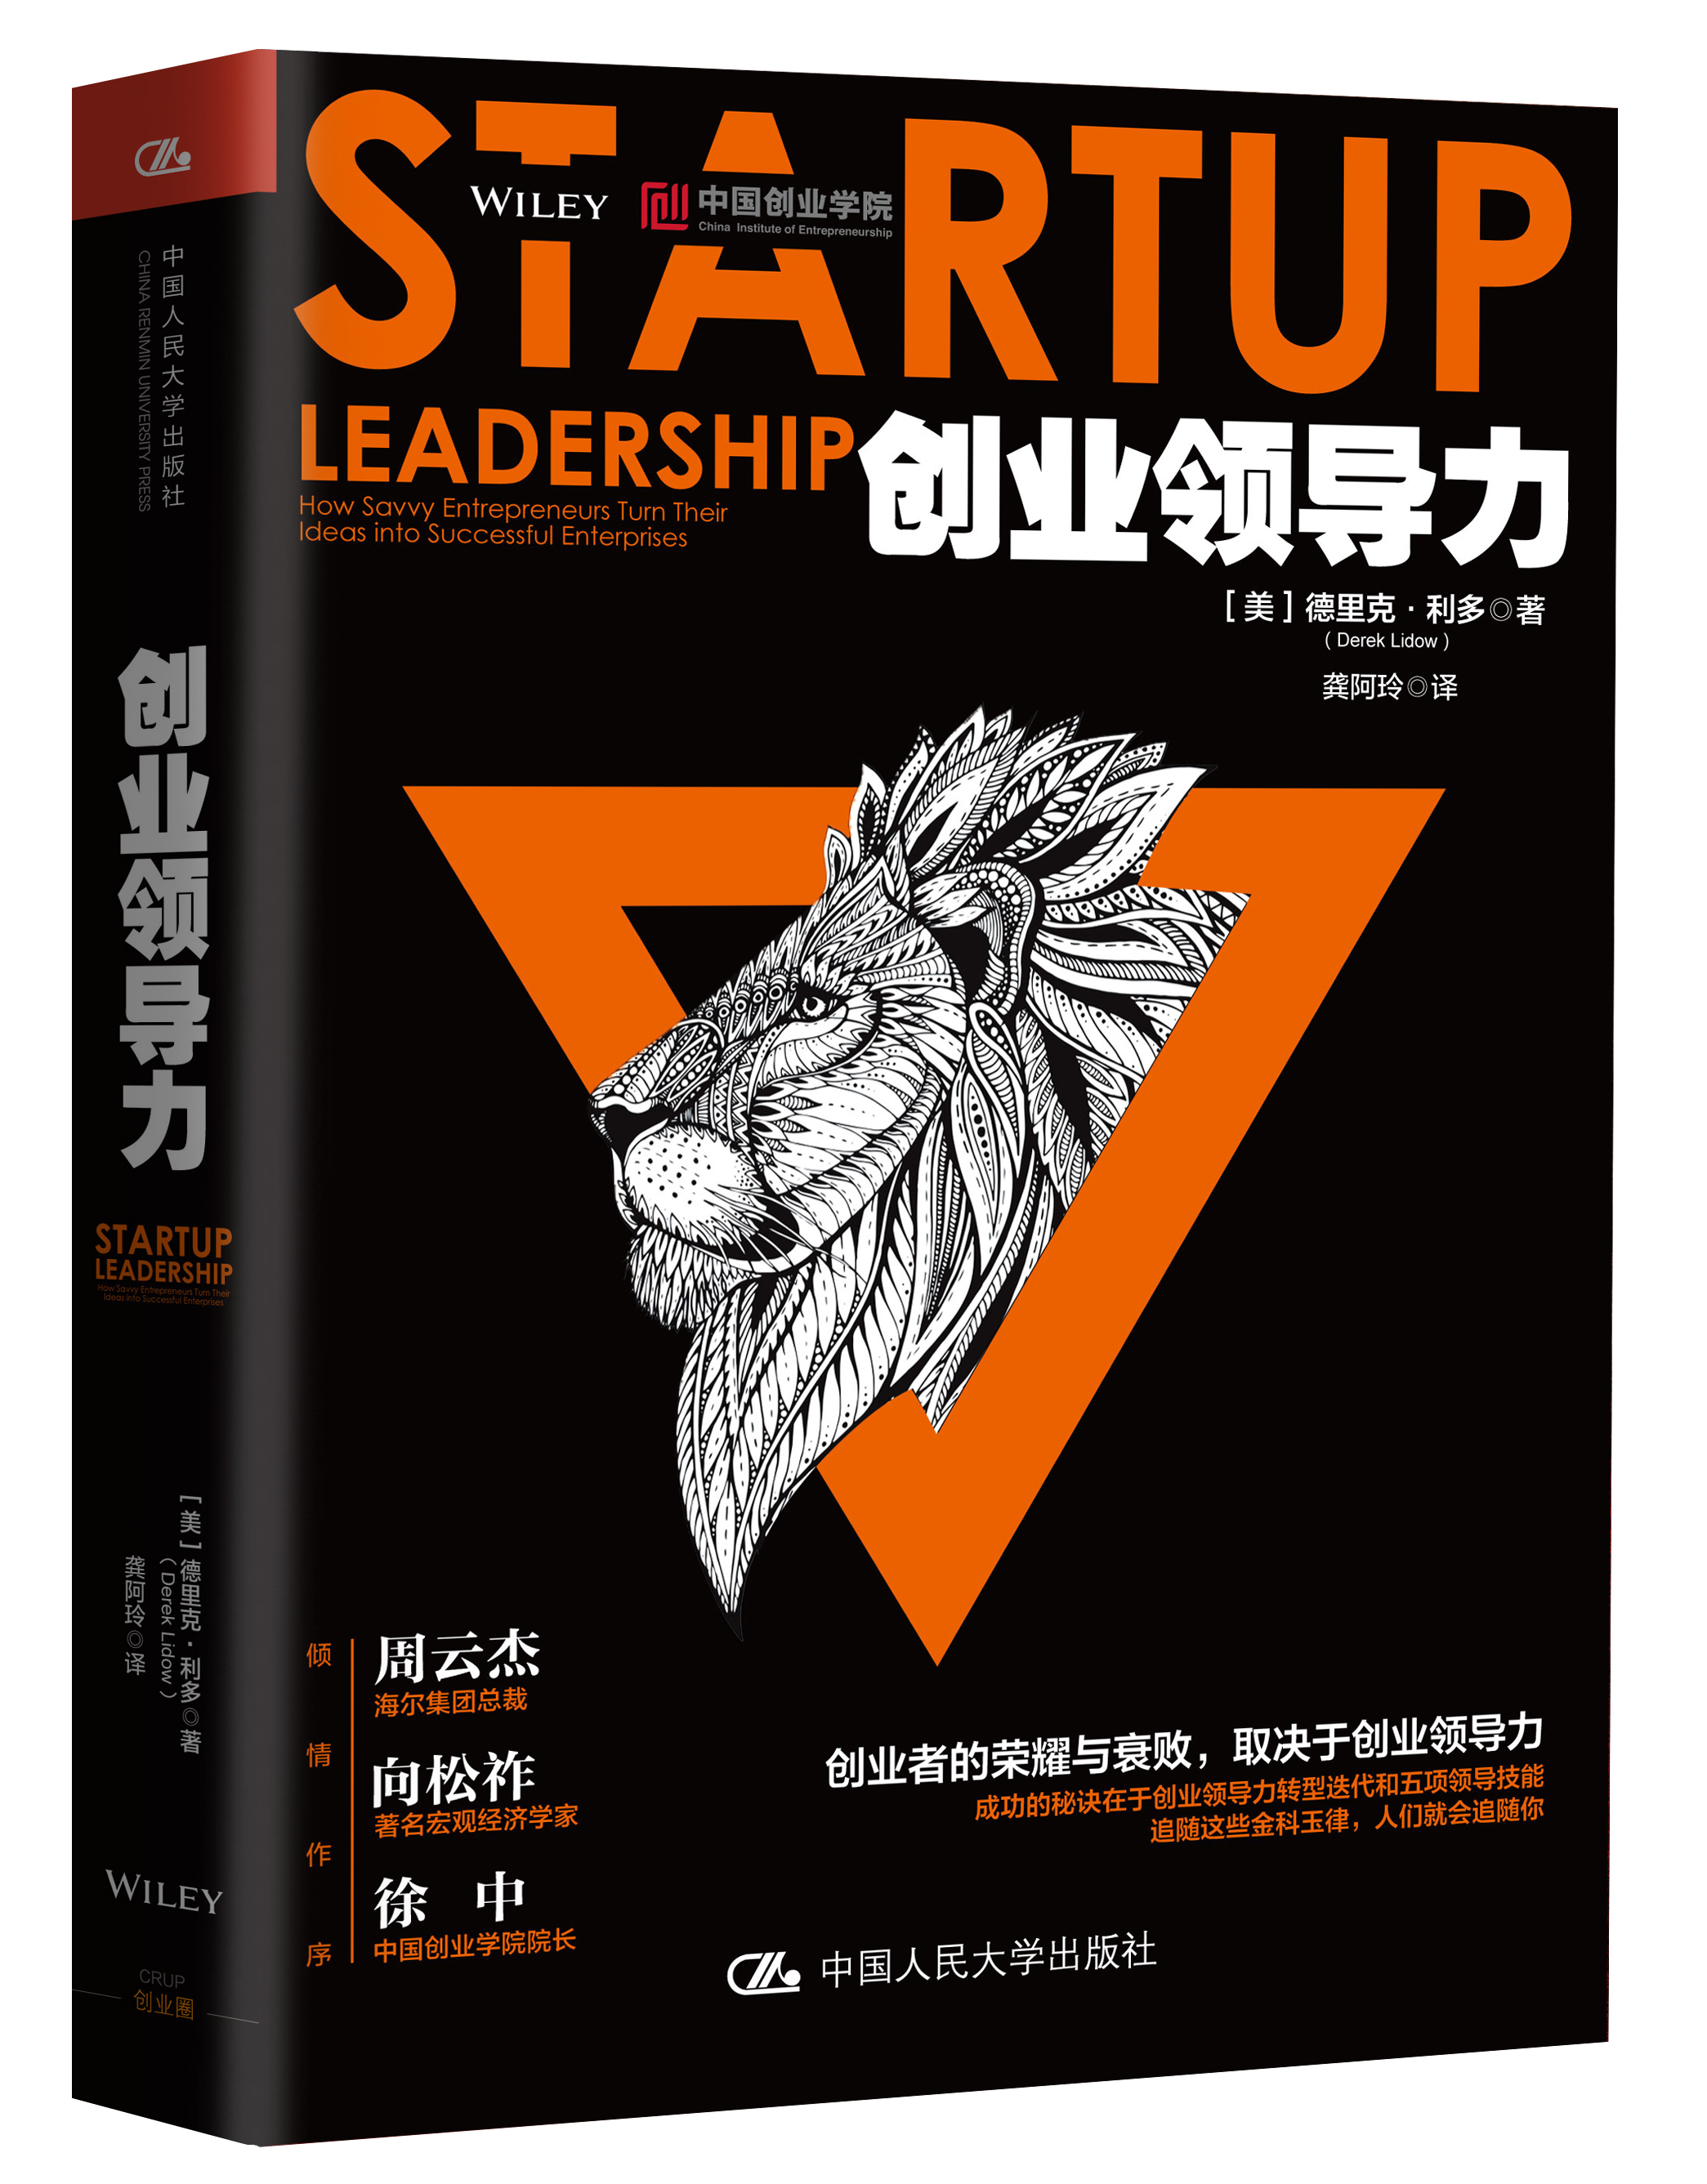 創業領導力(2017年出版的圖書)